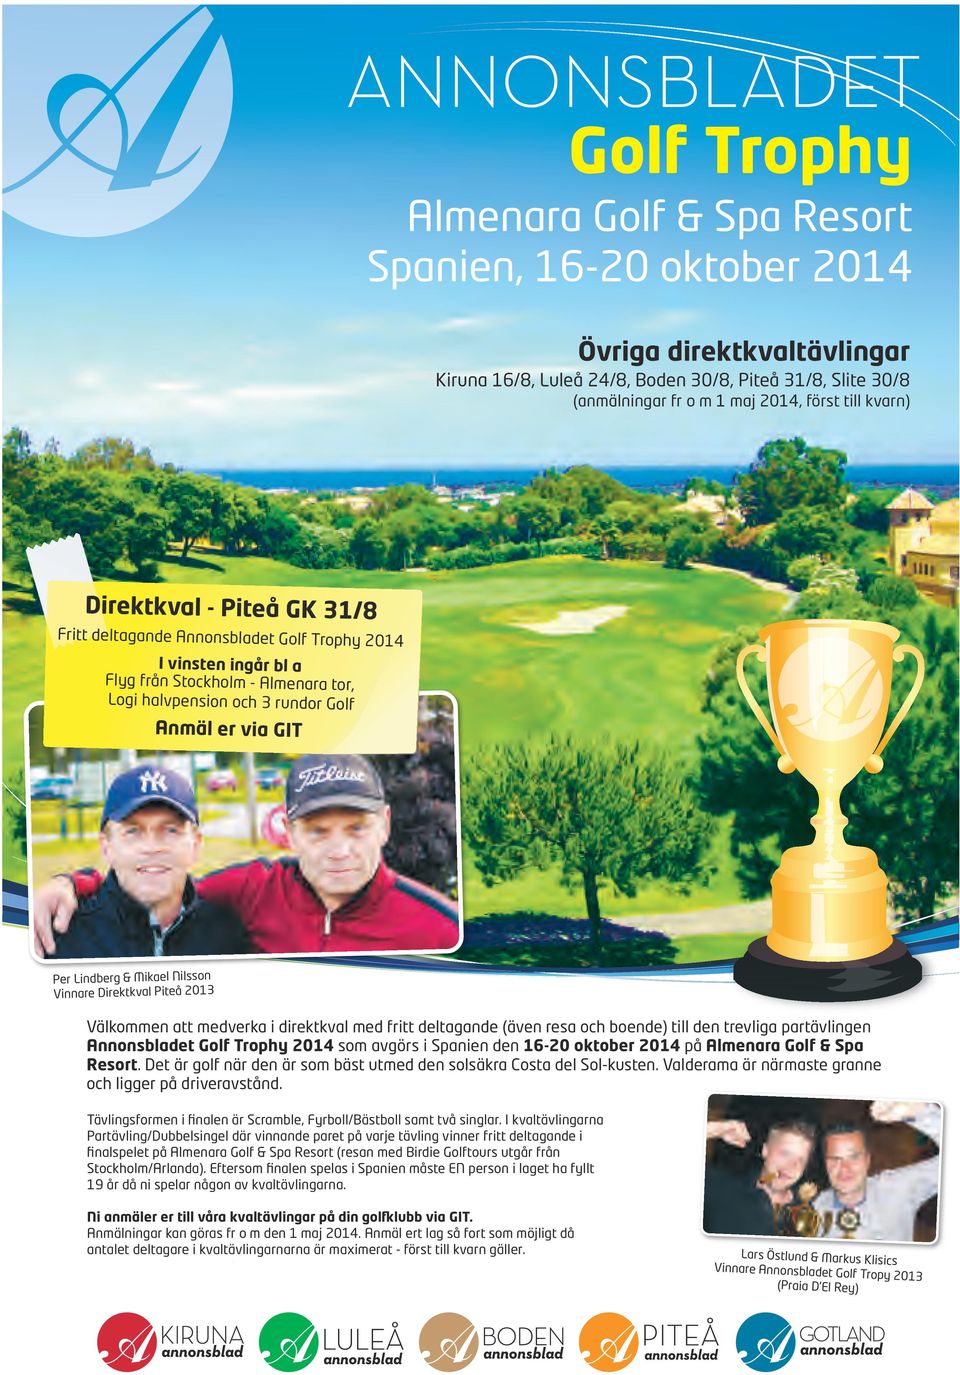 GIT Per Lindberg & Mikael Nilsson Vinnare Direktkval Piteå 2013 Välkommen att medverka i direktkval med fritt deltagande (även resa och boende) till den trevliga partävlingen Annonsbladet Golf Trophy